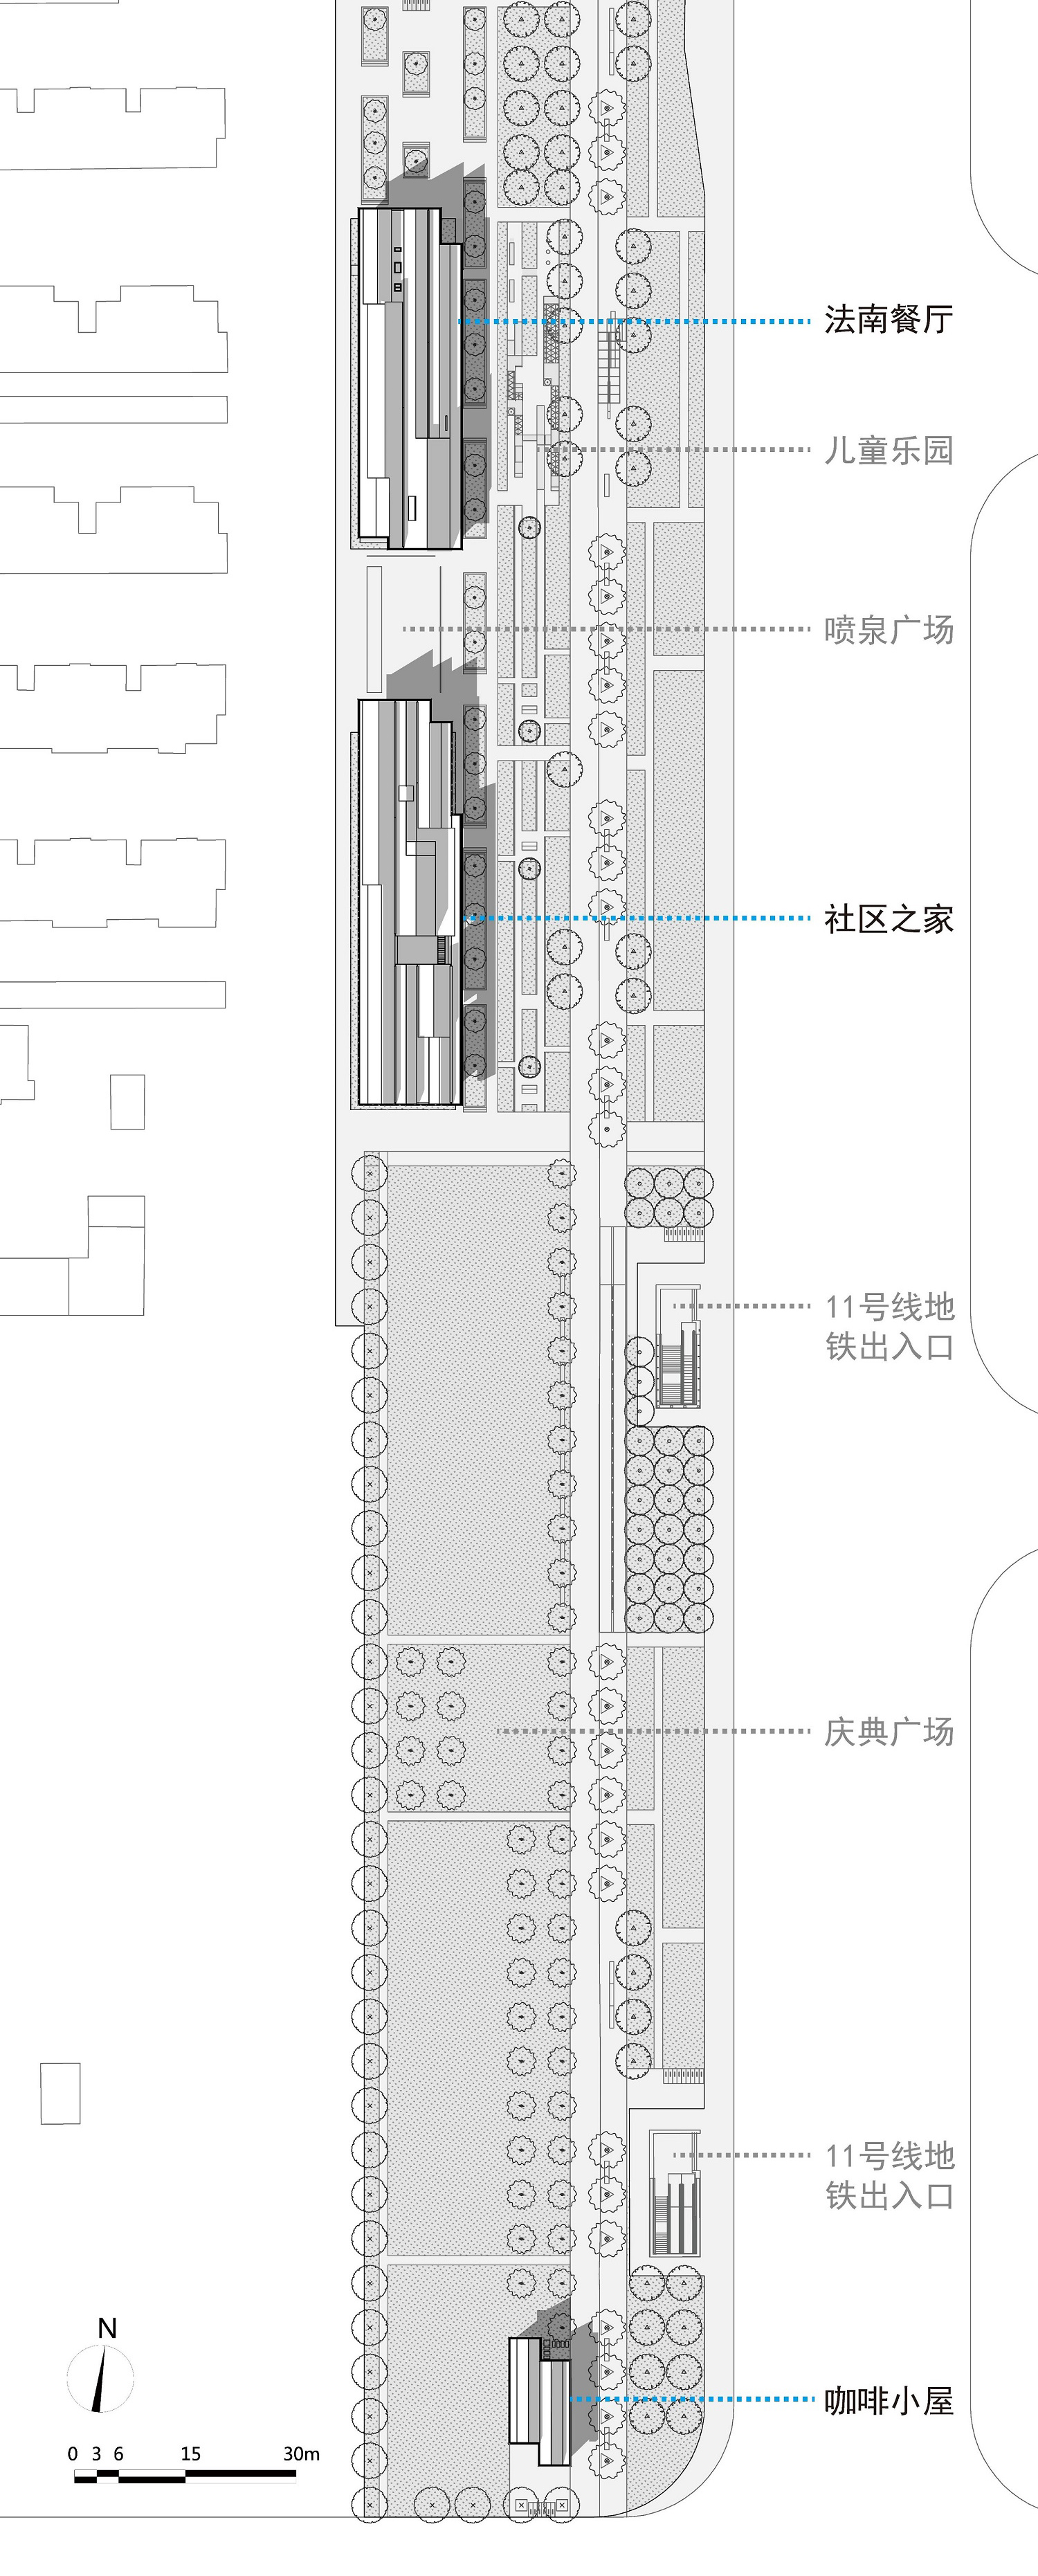 上海徐汇区云锦路活动之家建筑设计/山水秀建筑事务所